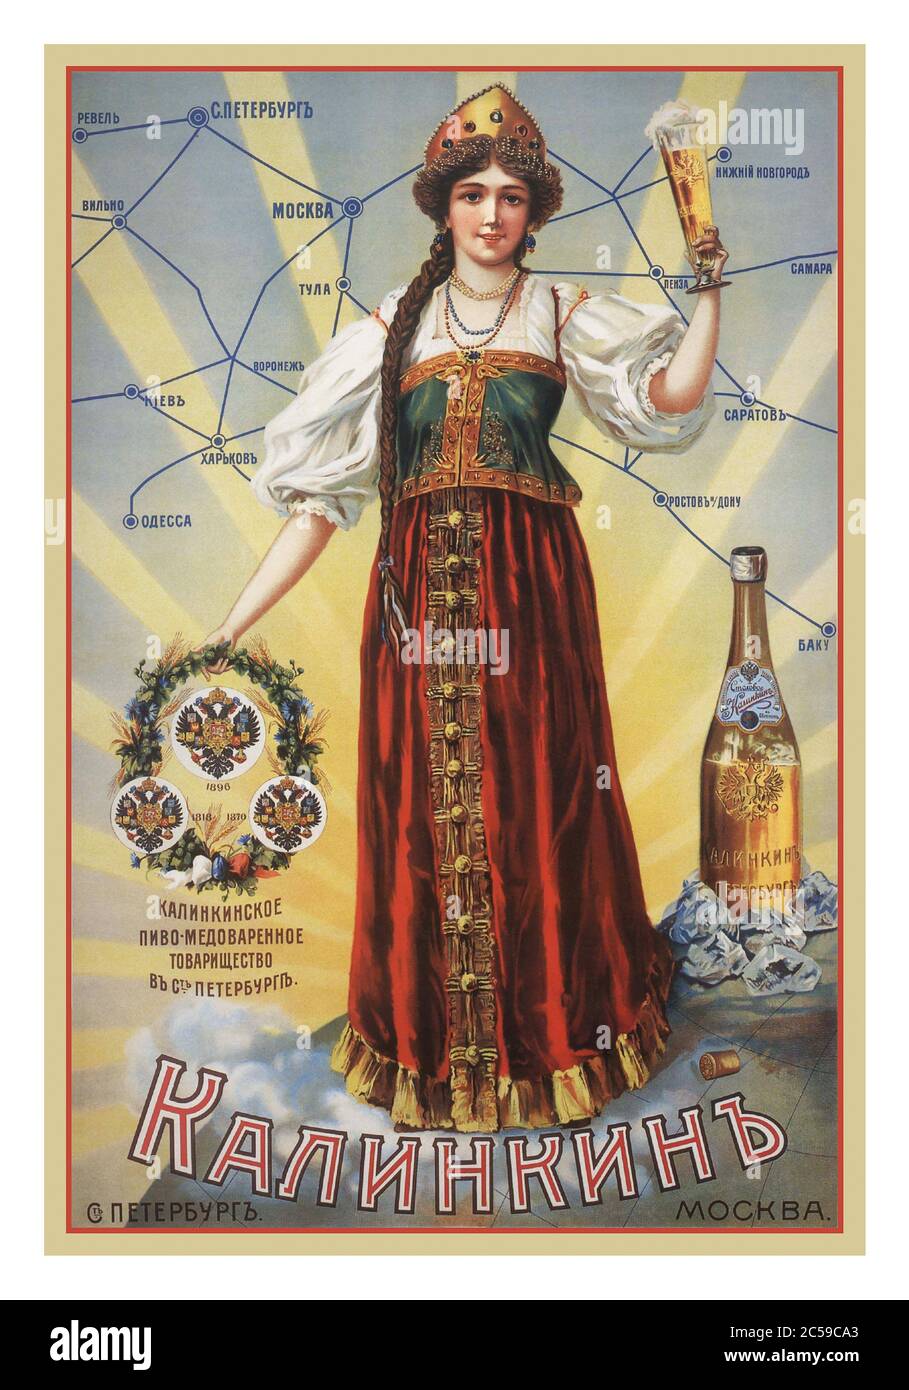 BIER PLAKAT RUSSLAND WERBUNG ALTE HISTORISCHE ALTE ALTE SOWJETISCHE JAHRGANG russischen Bier Alkohol trinken Werbeplakat mit Frau in traditionellen russischen Volkstracht mit einem Glas Bier Moskau Russland (1900er) Stockfoto